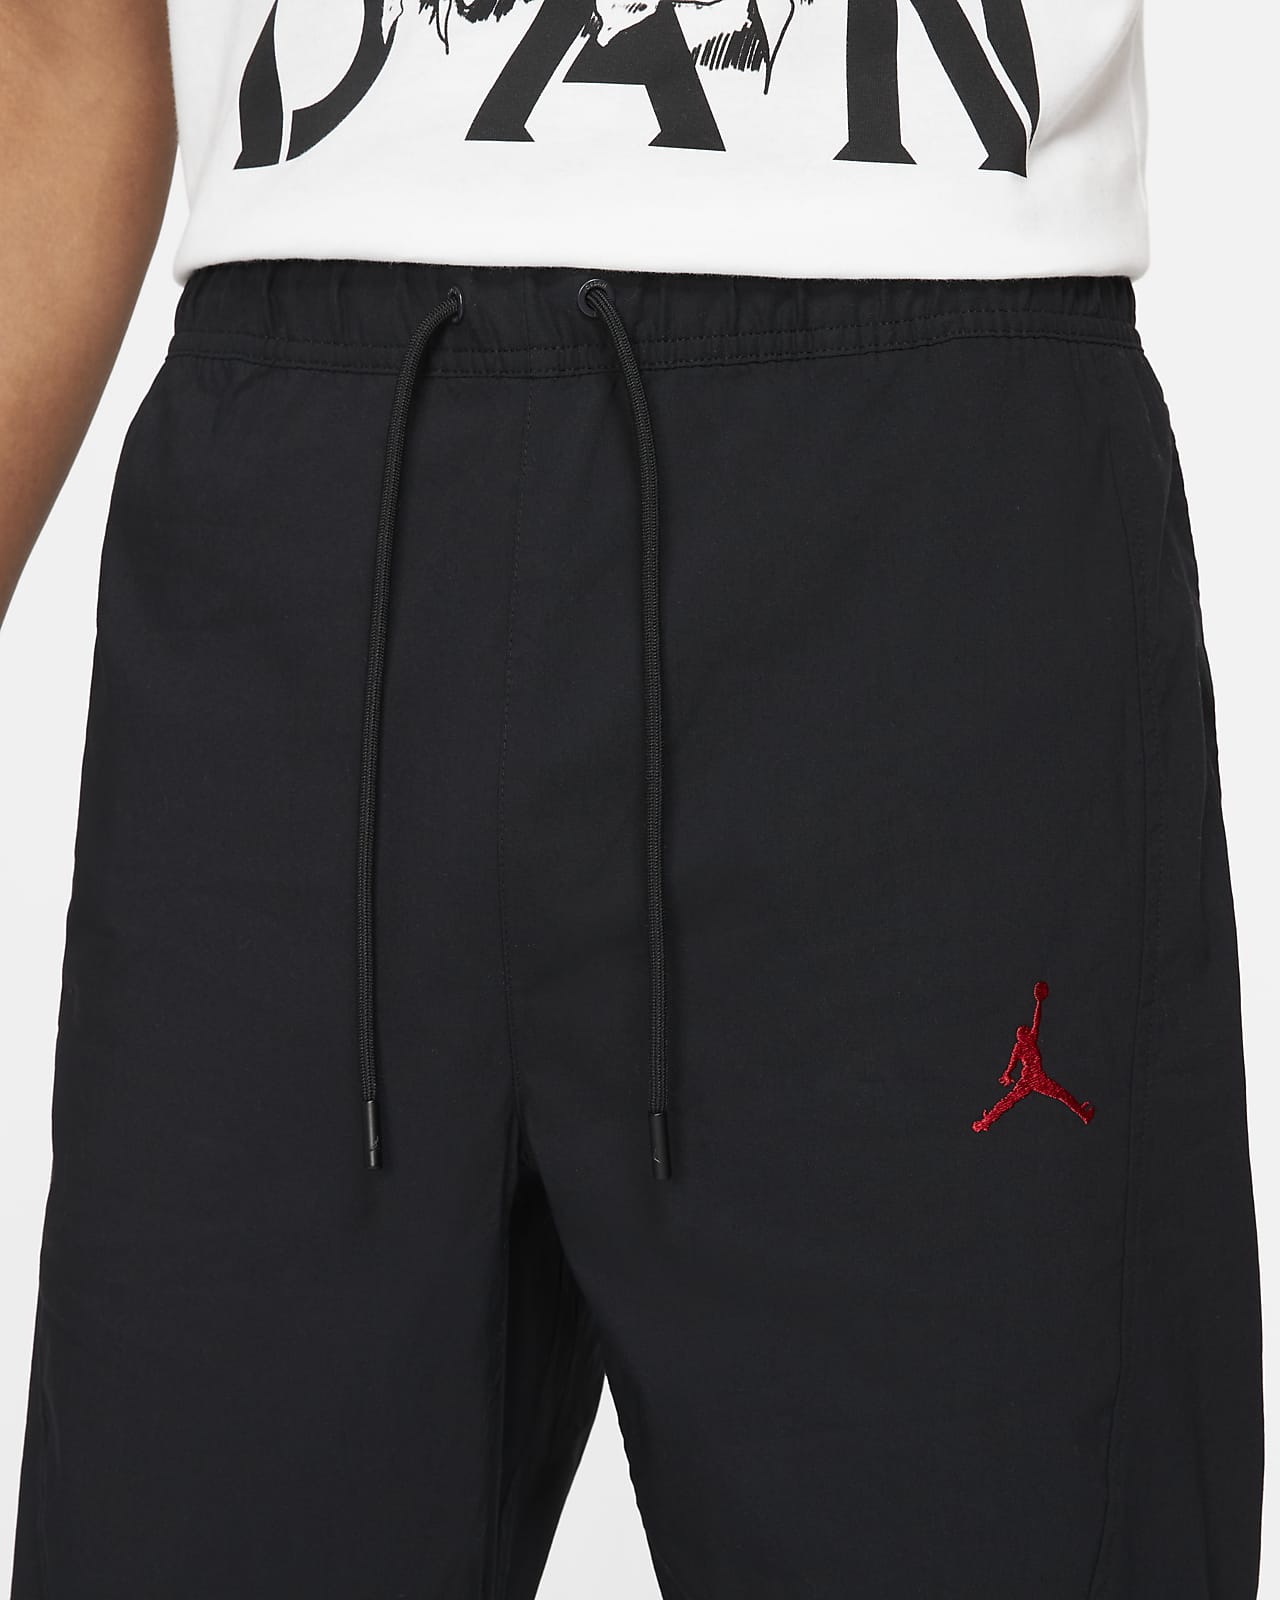 Jordan Essential Men's Woven Trousers. Nike SA